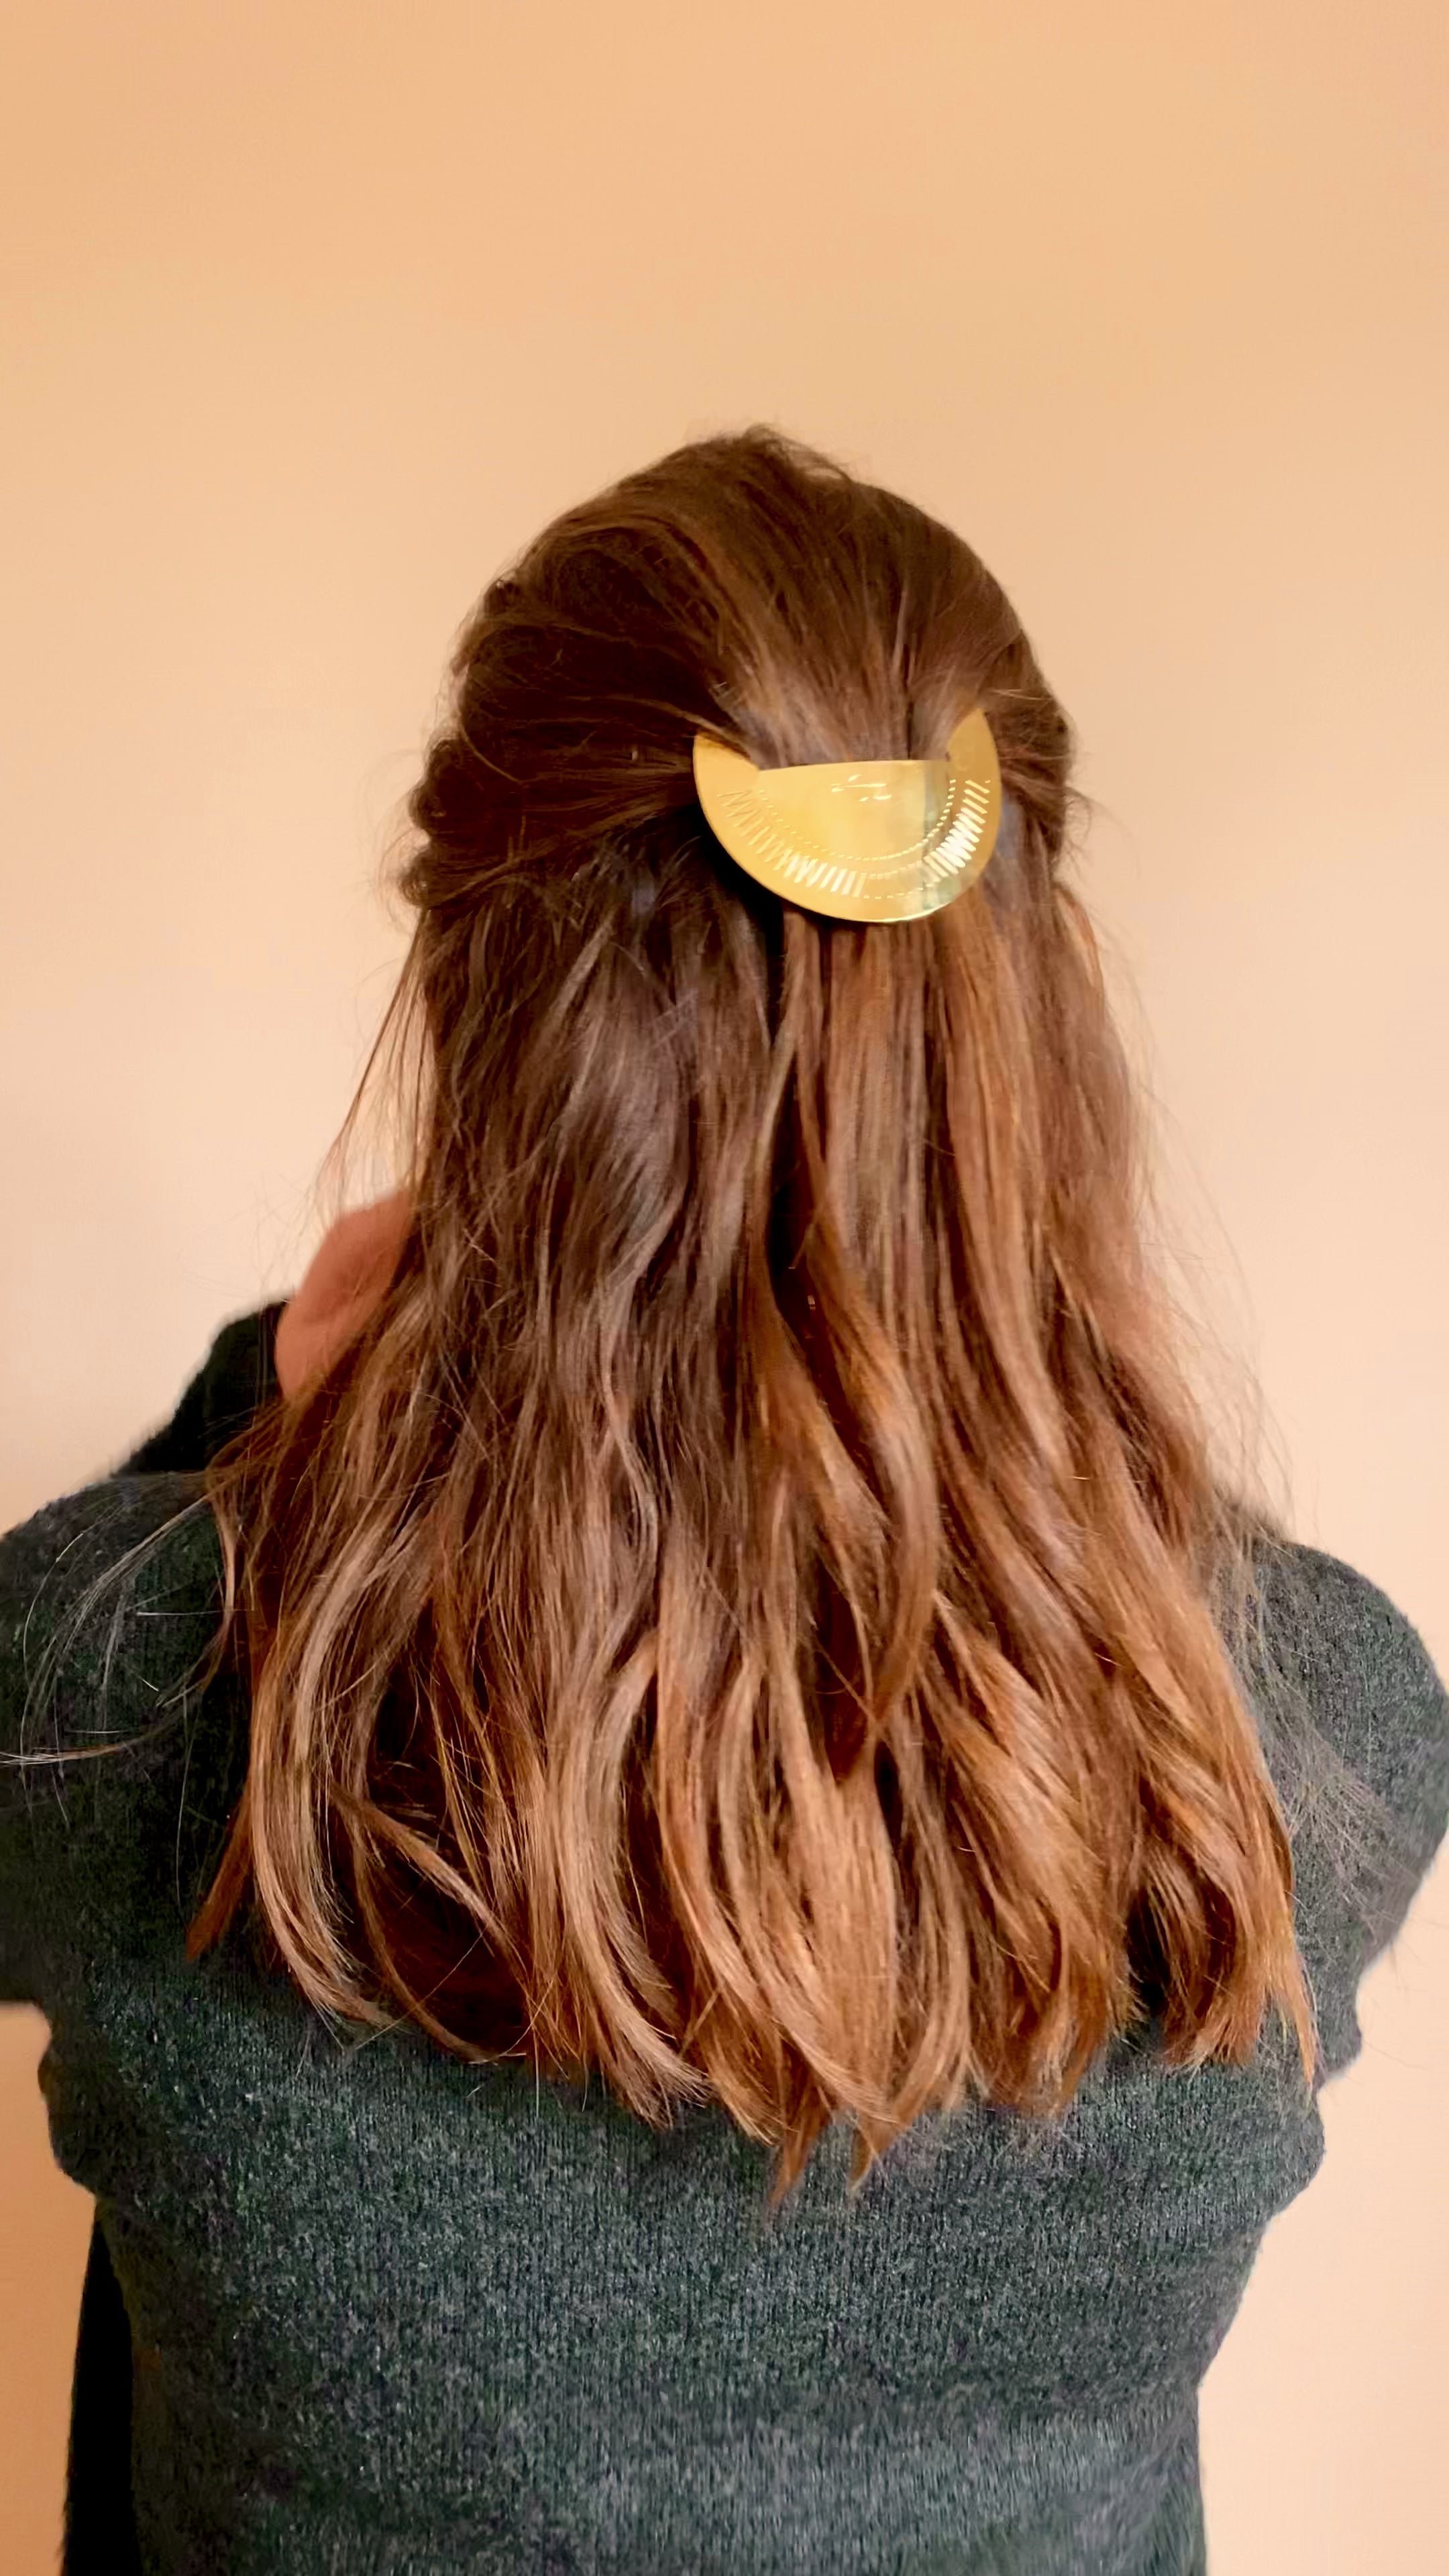 Femme aux cheveux longs portant une demi queue ornée d'une barrette dorée ronde